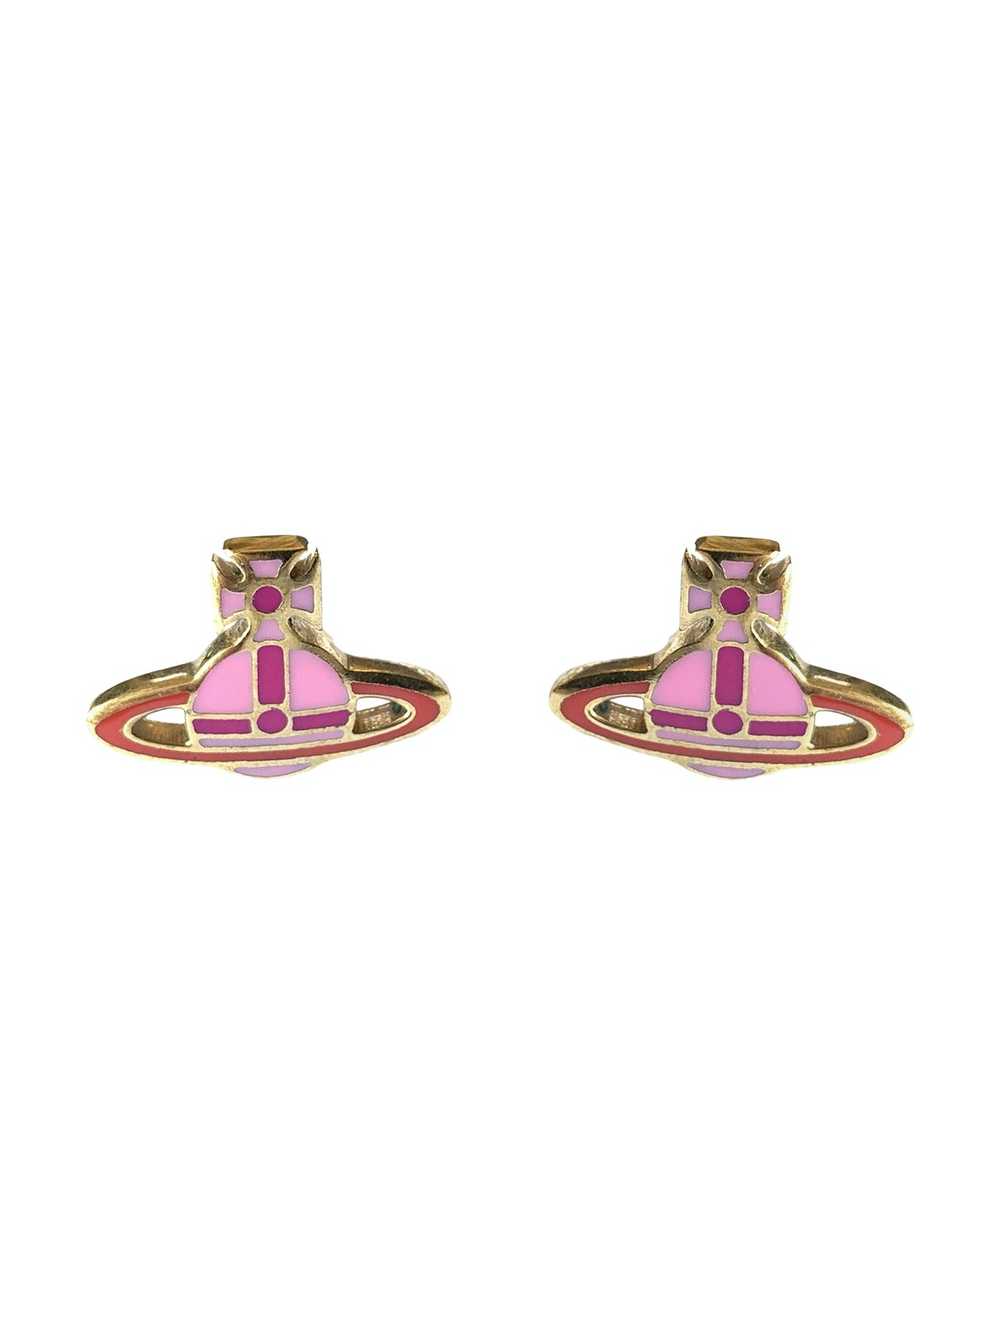 Vivienne Westwood Pink Enamel Earrings - image 1